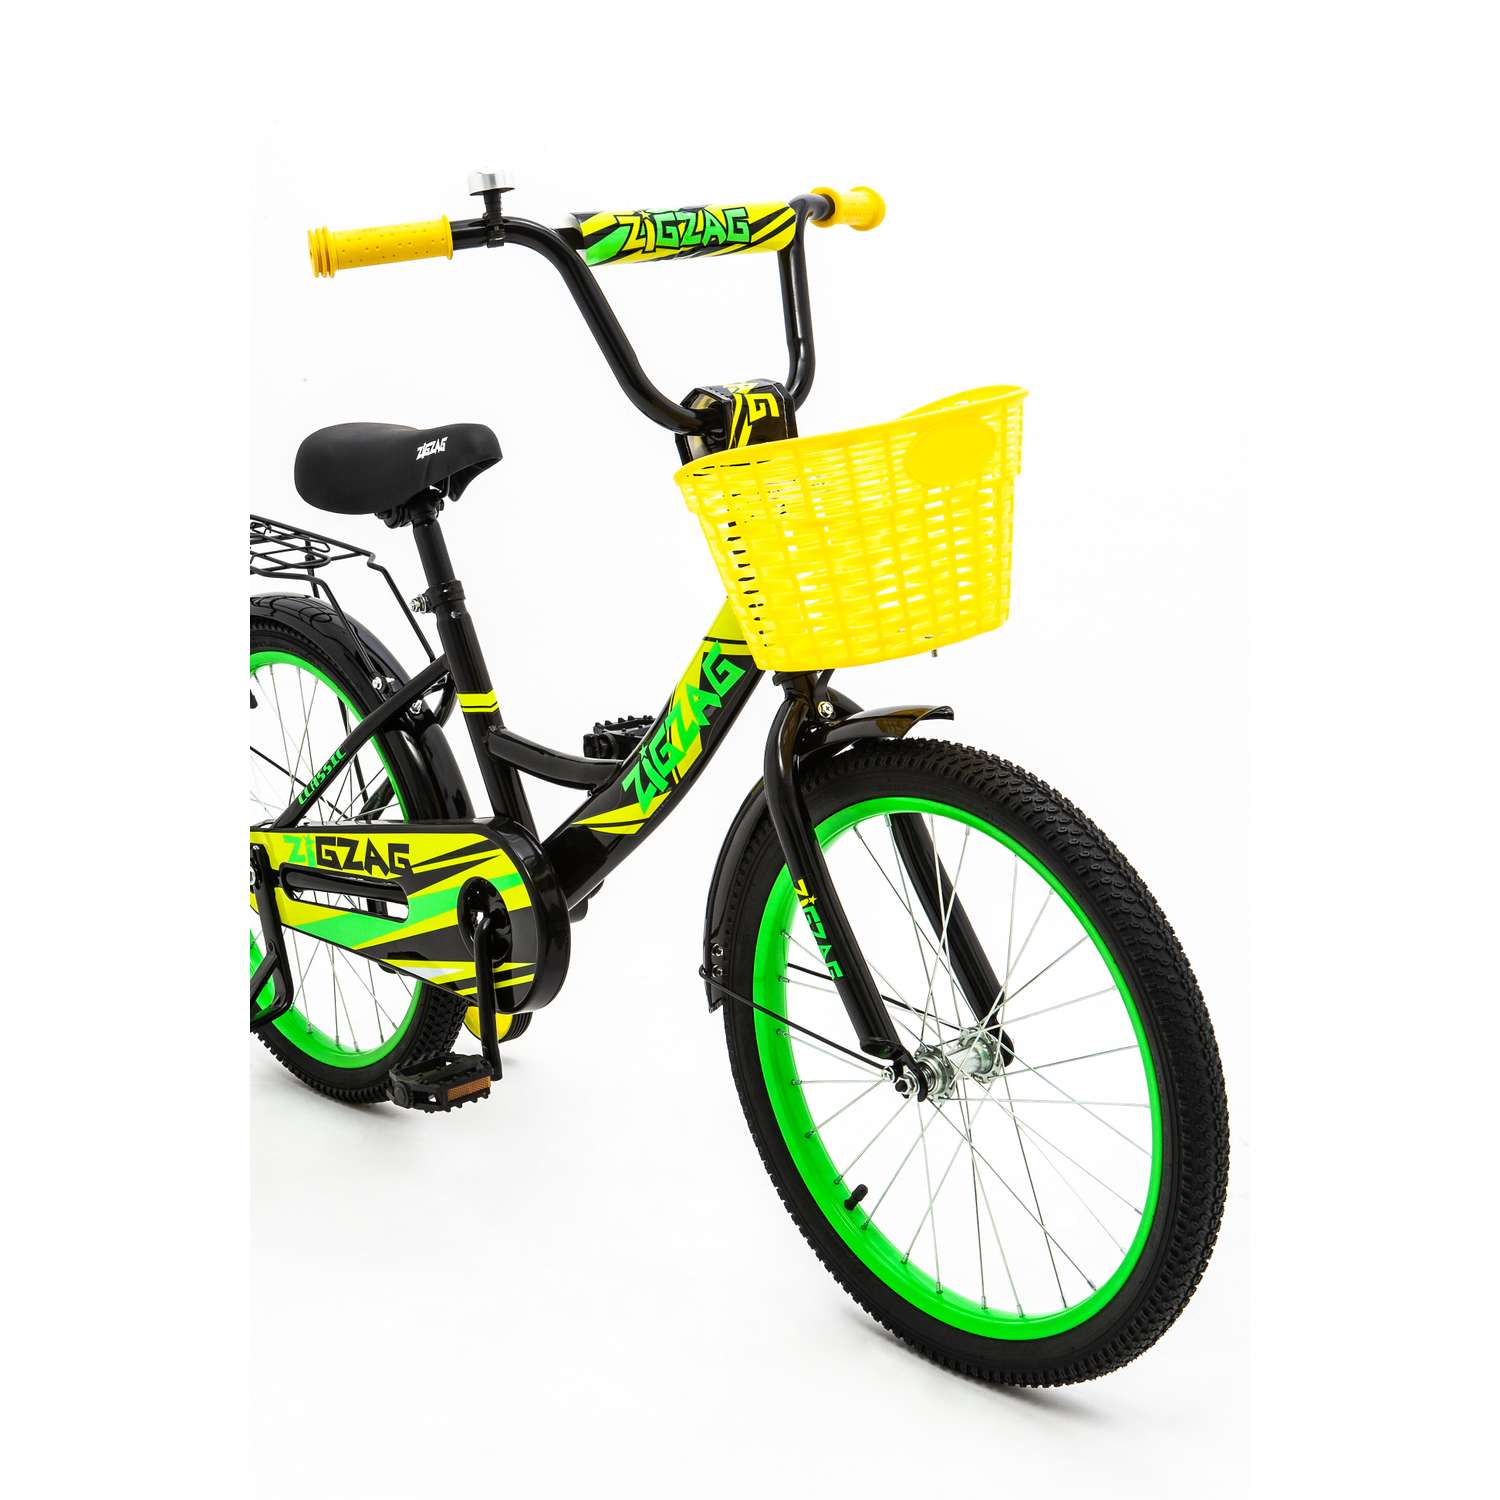 Велосипед ZigZag CLASSIC черный желтый зеленый 20 дюймов - фото 7